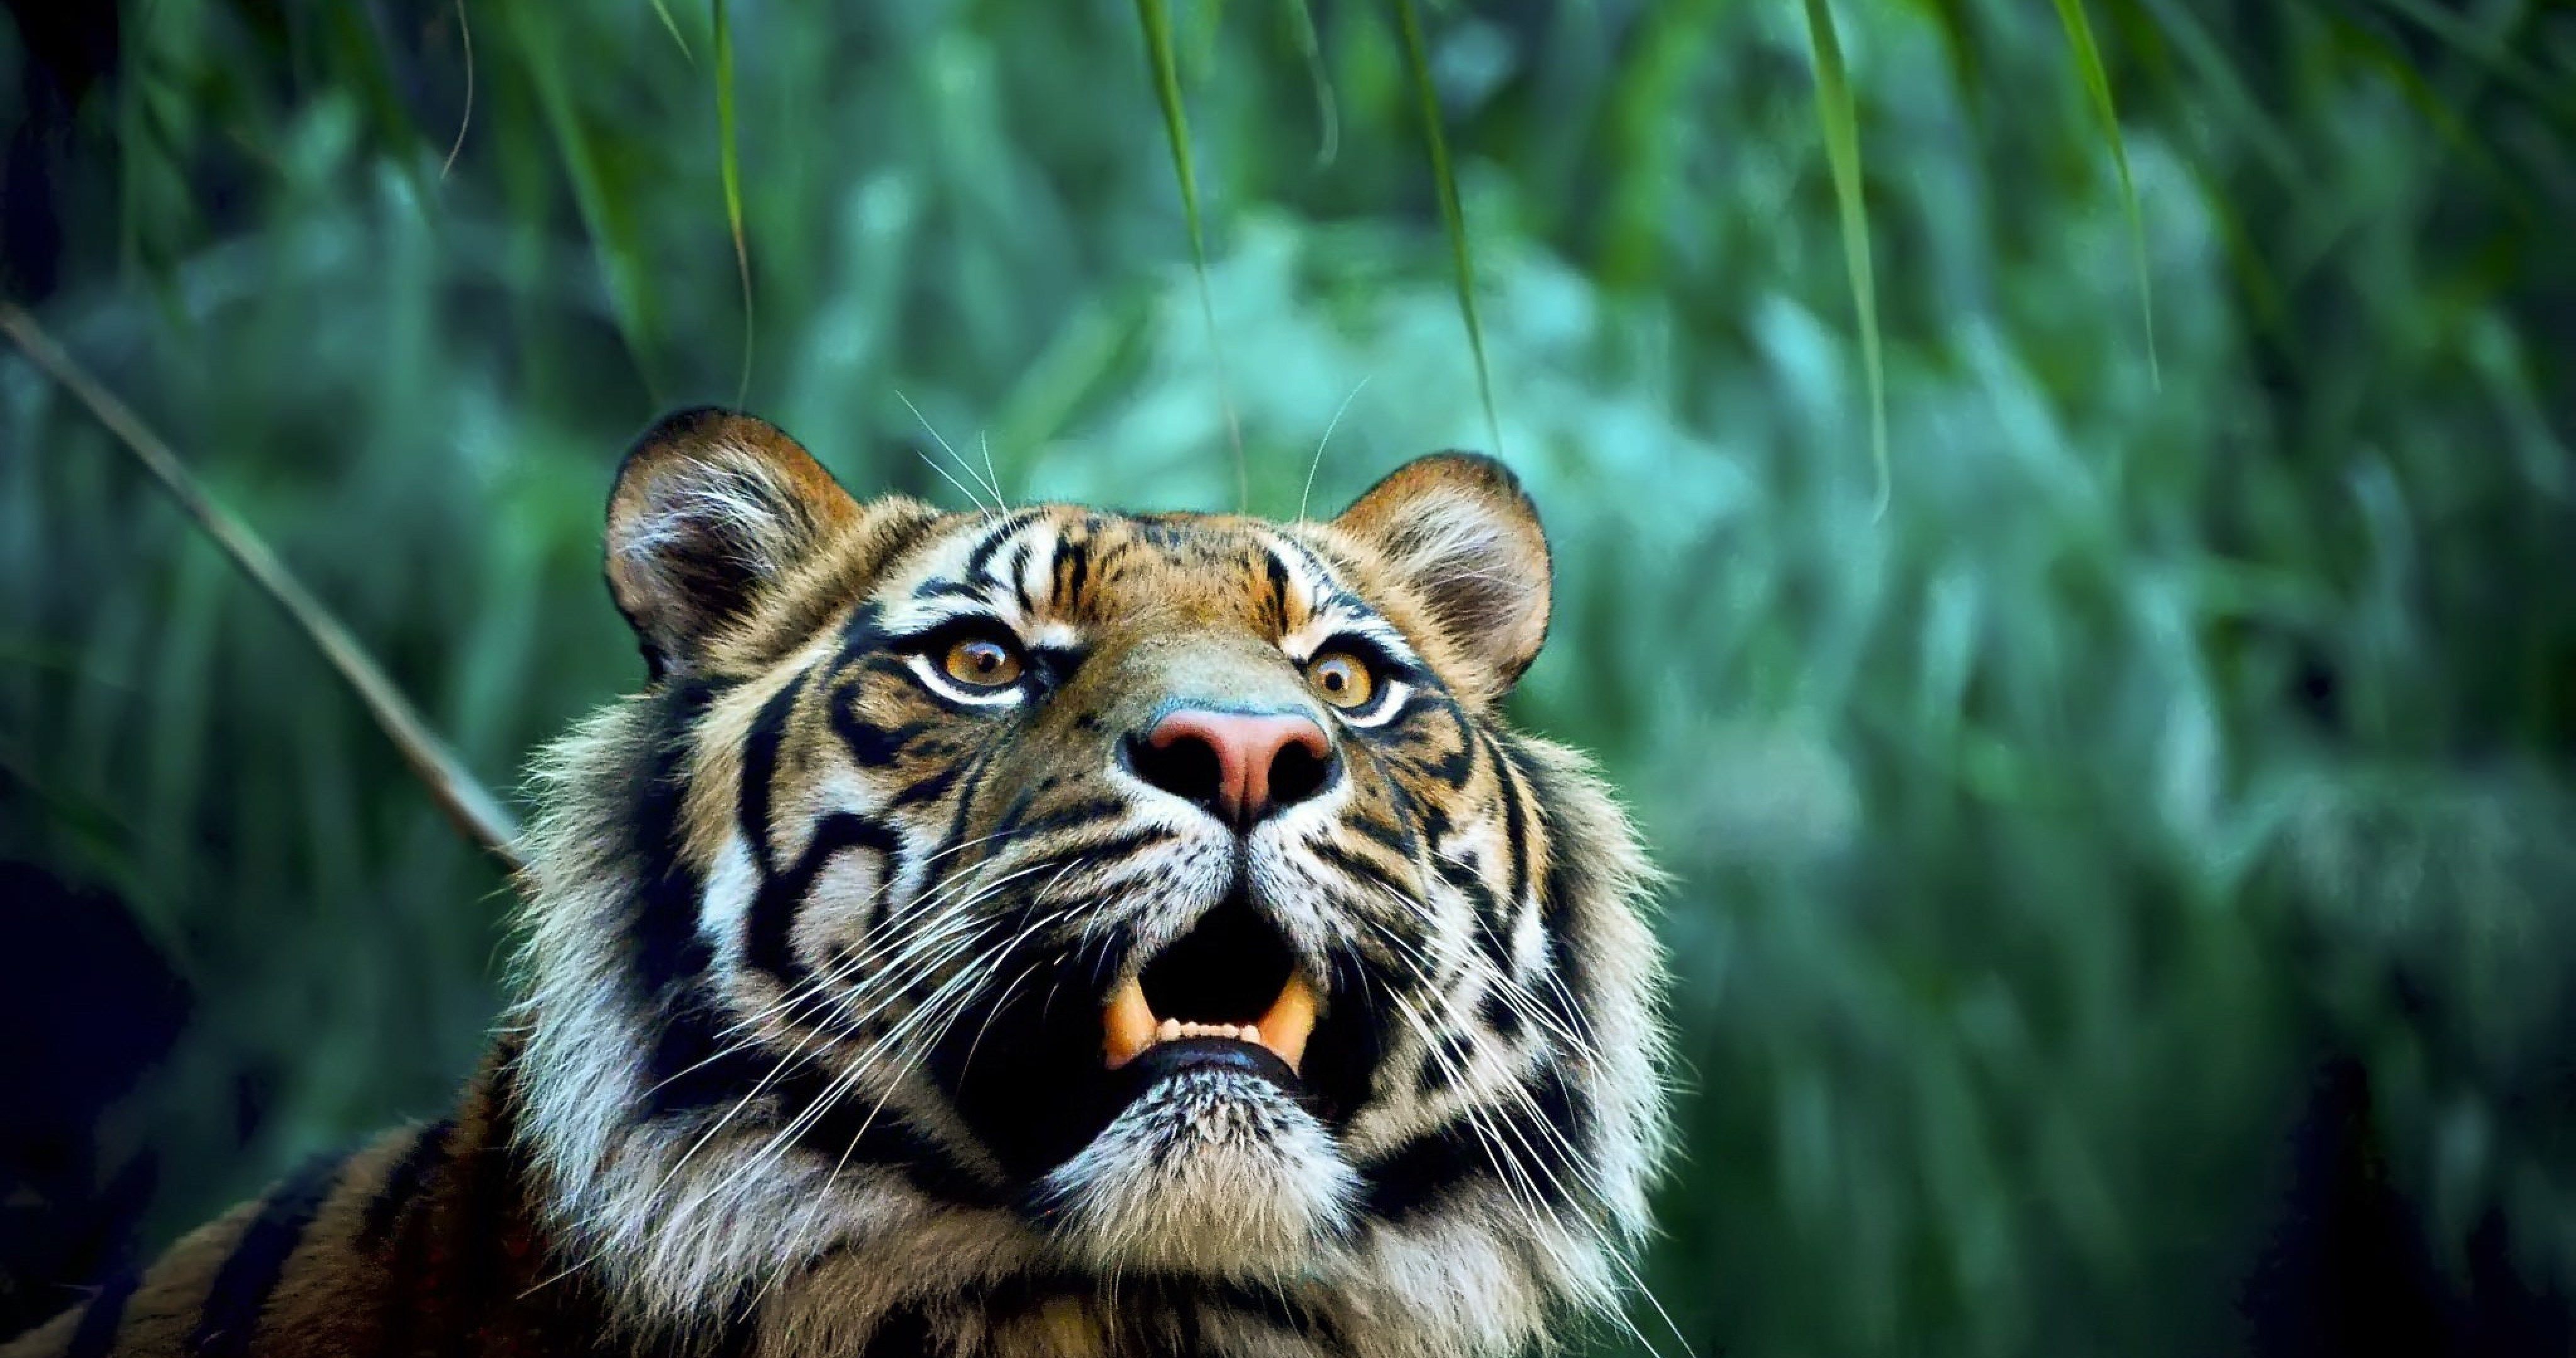 tigre tapete,tiger,tierwelt,landtier,bengalischer tiger,schnurrhaare